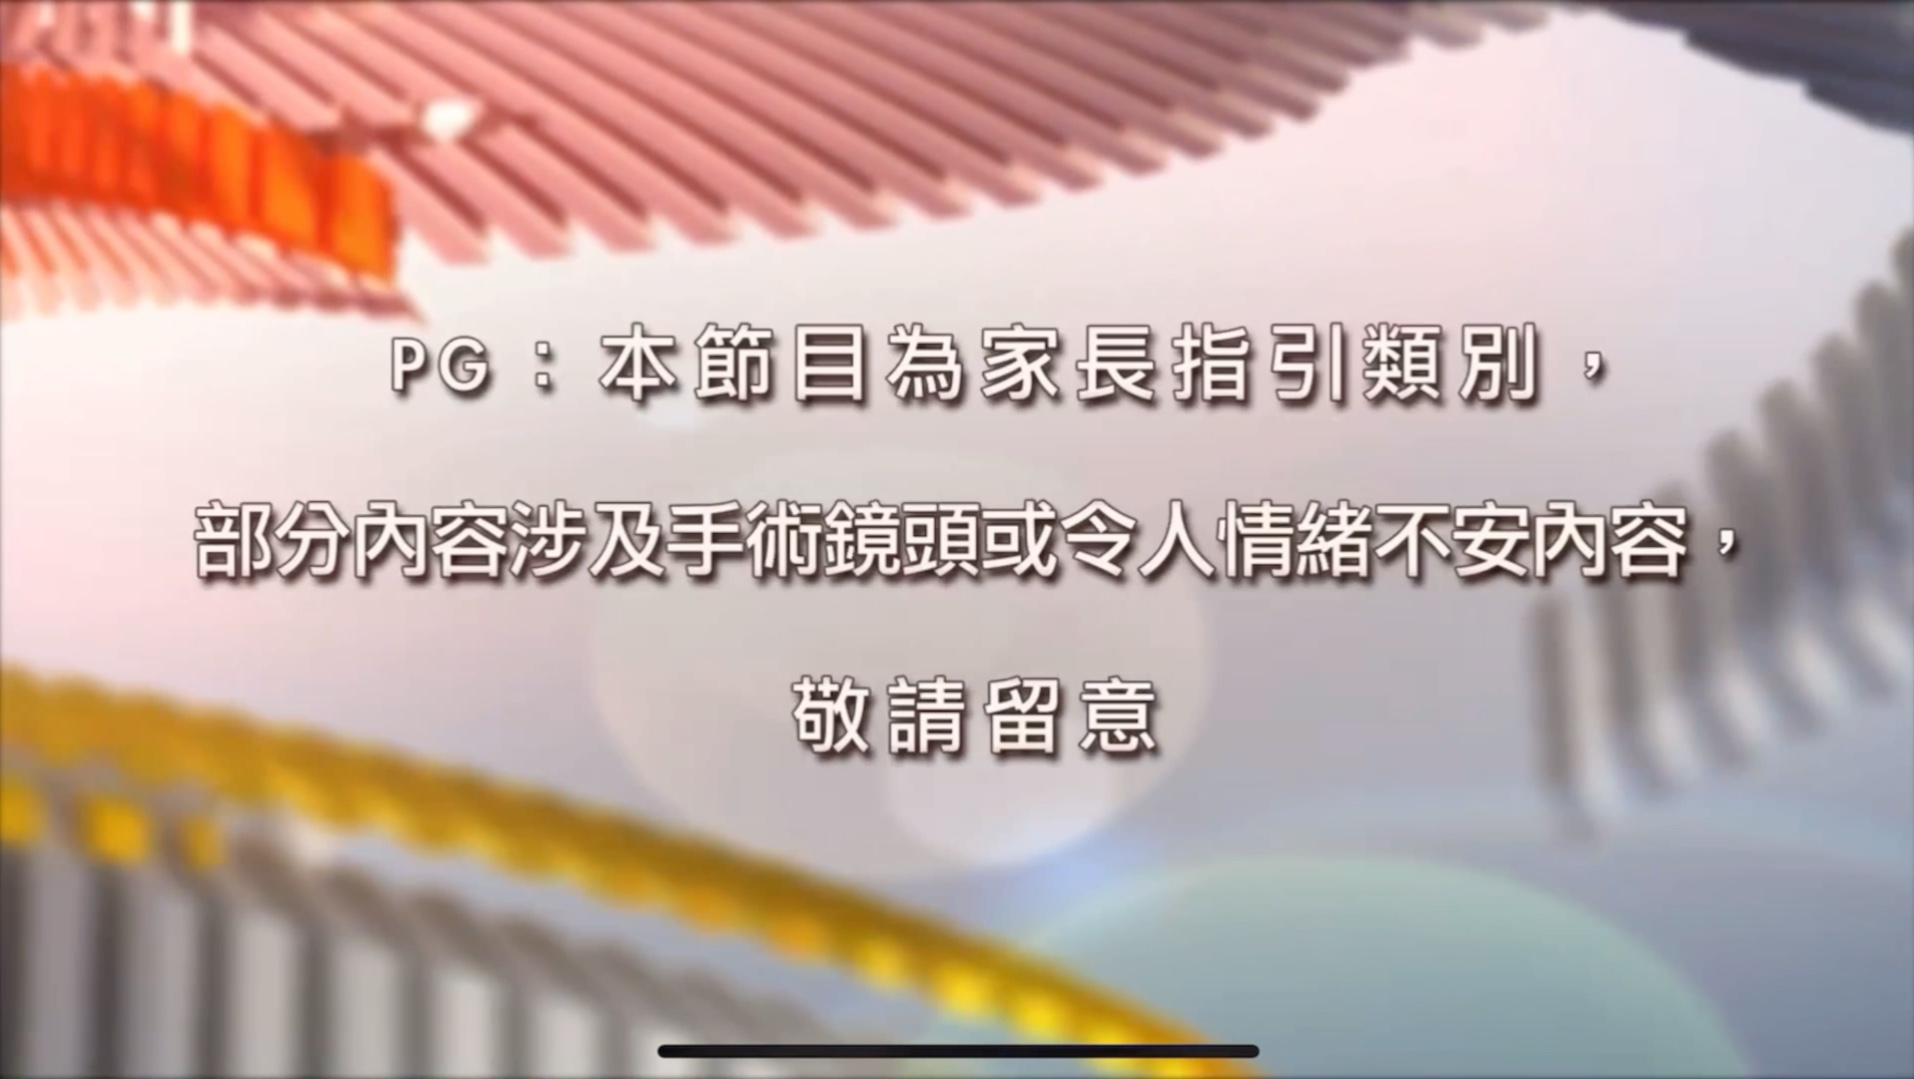 【凤凰卫视】凤凰香港台首次播出「PG家长指引」